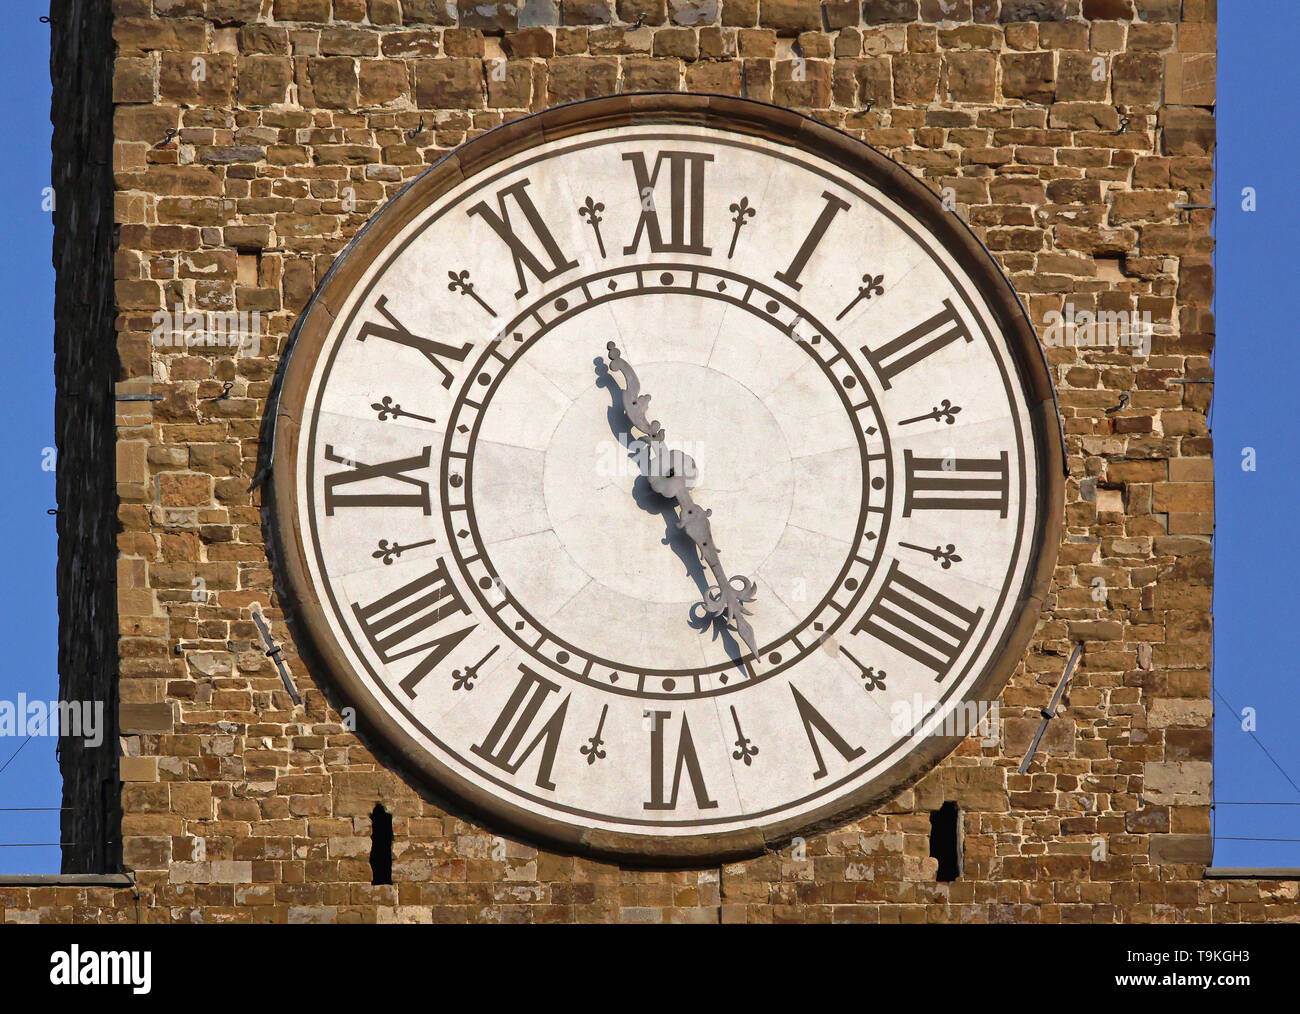 Orologio con numeri romani nella torre a Firenze Italia Foto stock - Alamy